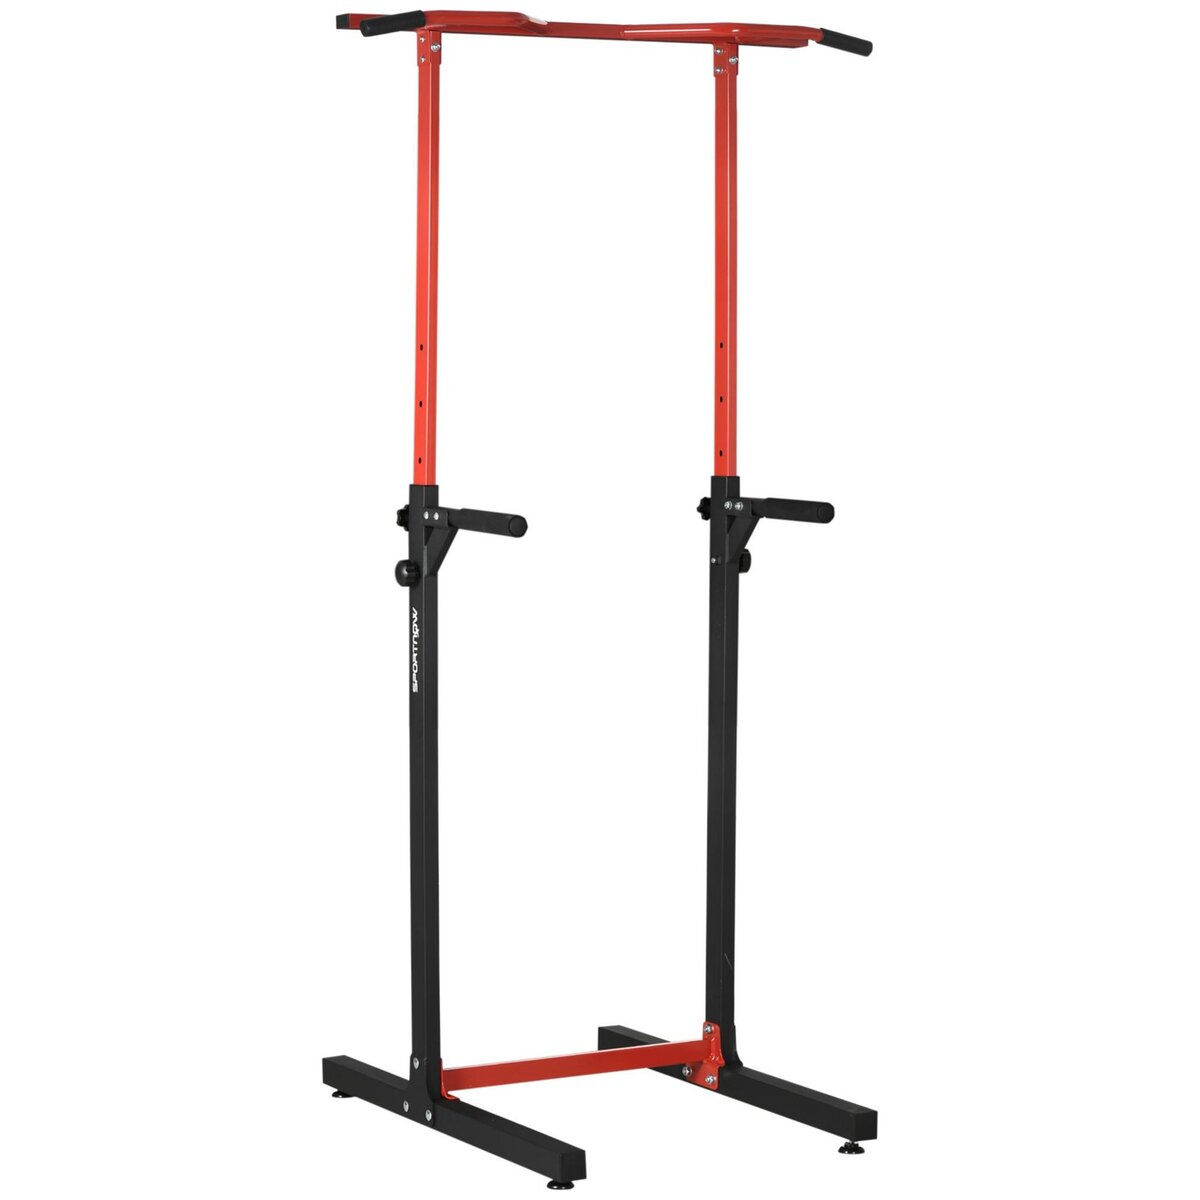 HOMCOM Station de musculation multifonction - barre de traction chaise romaine - hauteur réglable 6 niv. - acier noir rouge